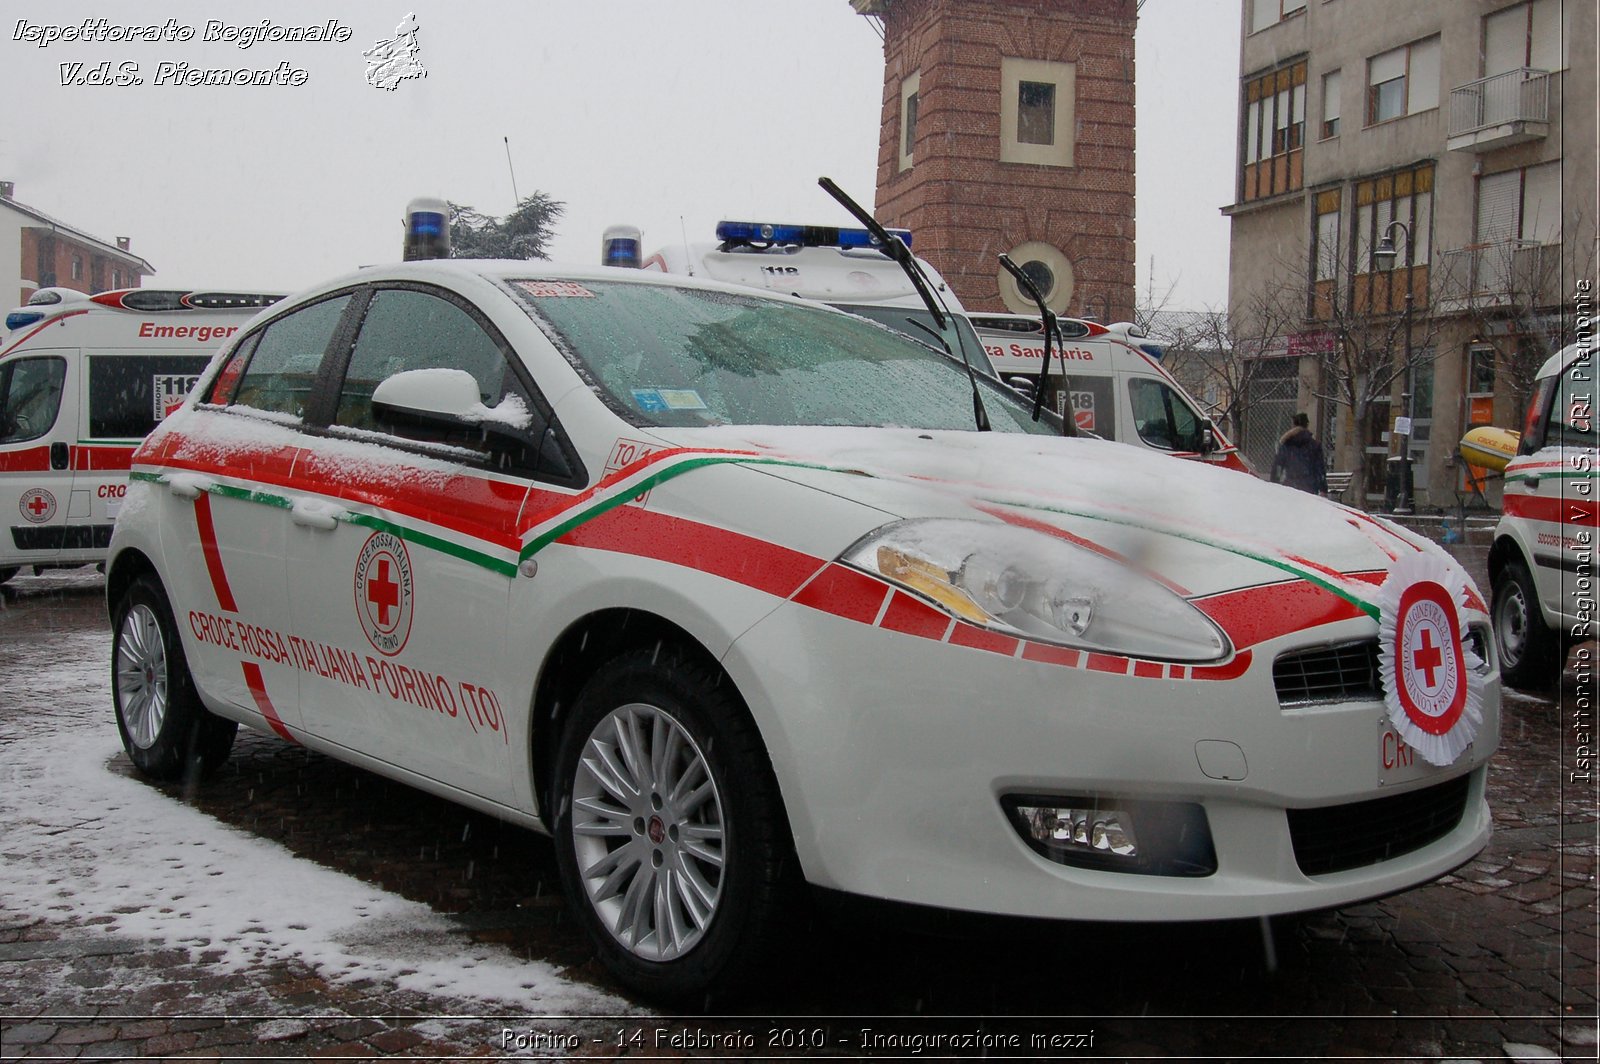 Poirino - 14 Febbraio 2010 - Inaugurazione mezzi -  Croce Rossa Italiana - Ispettorato Regionale Volontari del Soccorso Piemonte